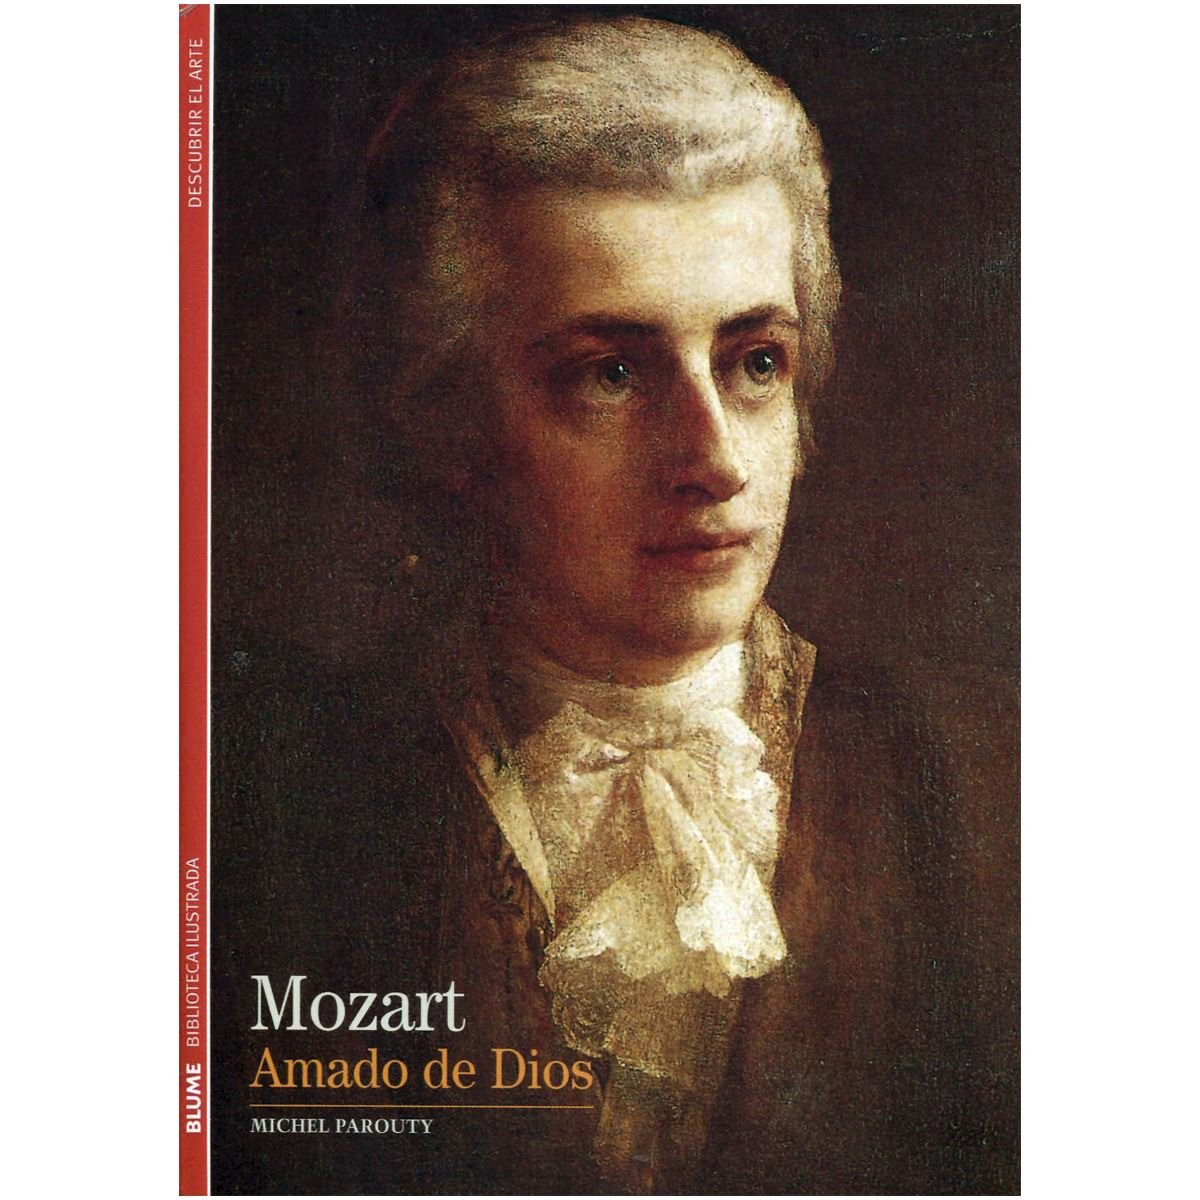 Mozart Amado de Dios